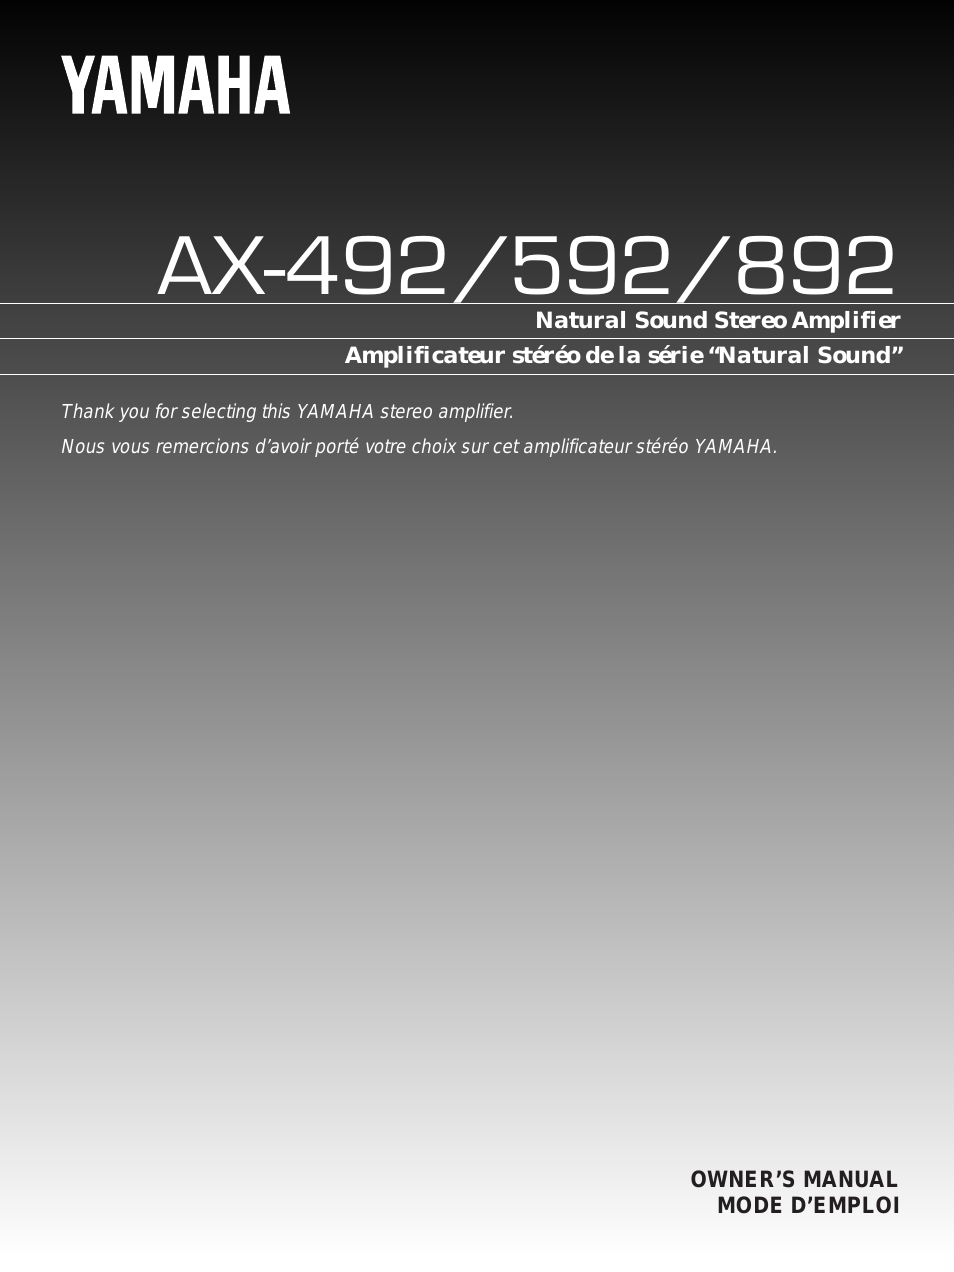 AX-892